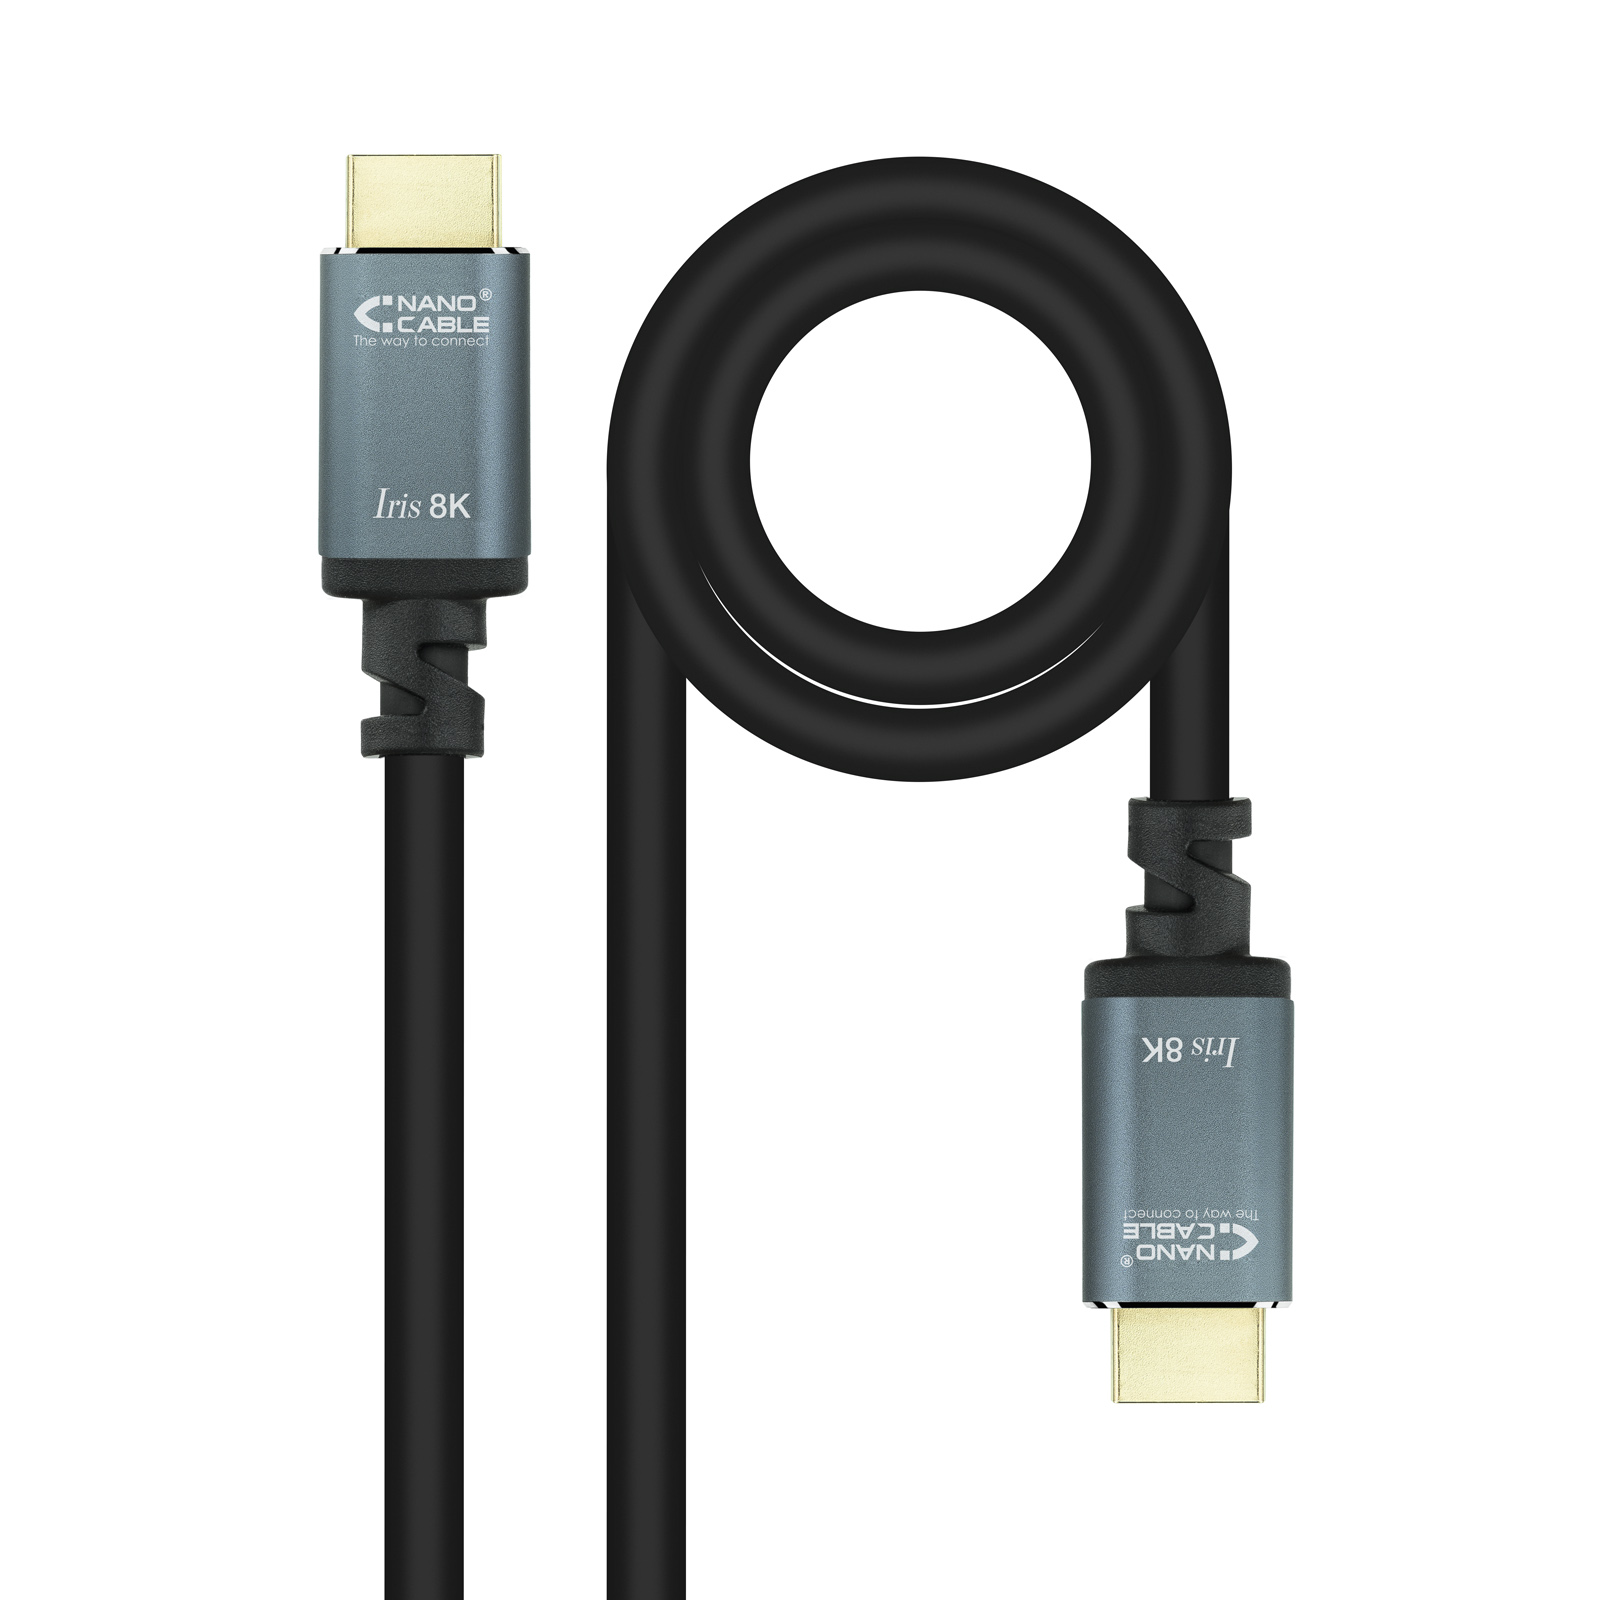 Câble Nanocable HDMI 2.1 Iris 8K A/MA/M - 5 m - Noir